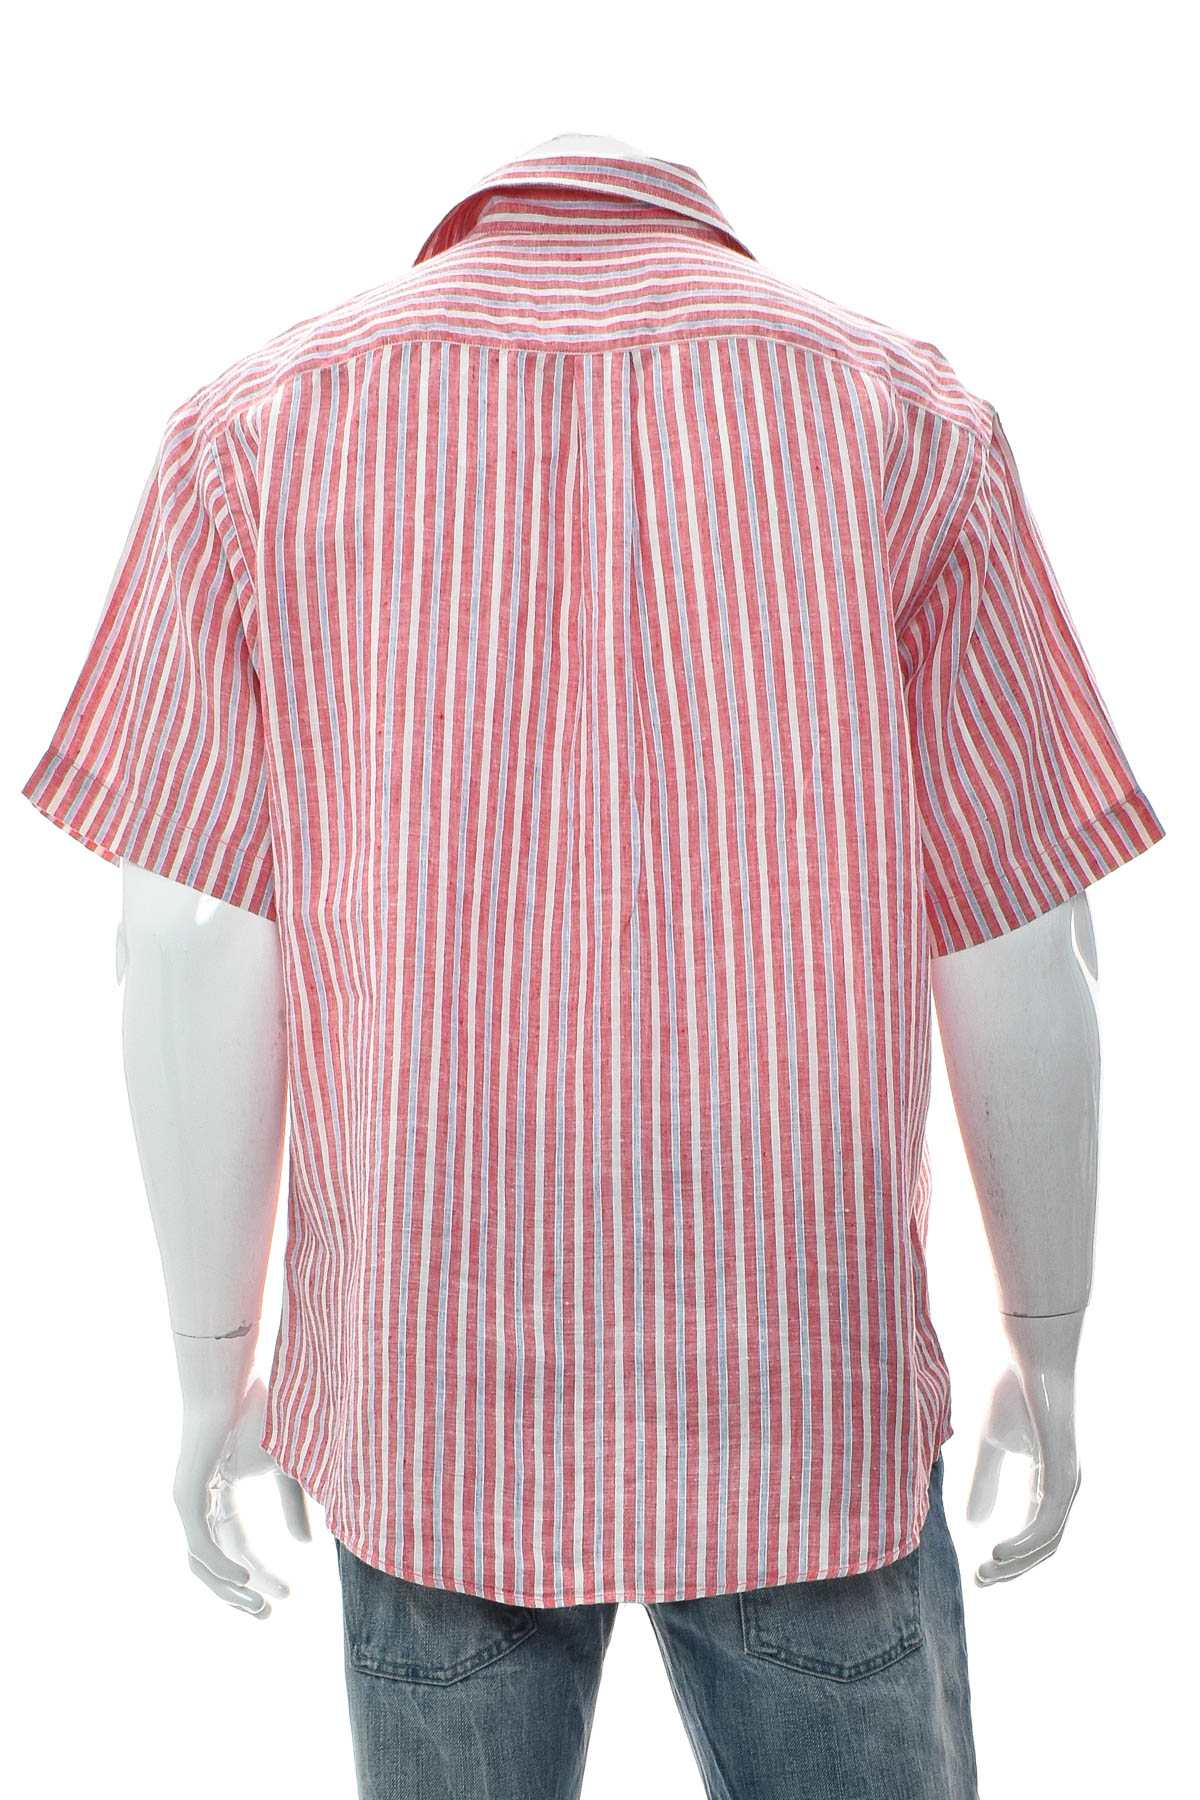 Ανδρικό πουκάμισο - York - 1